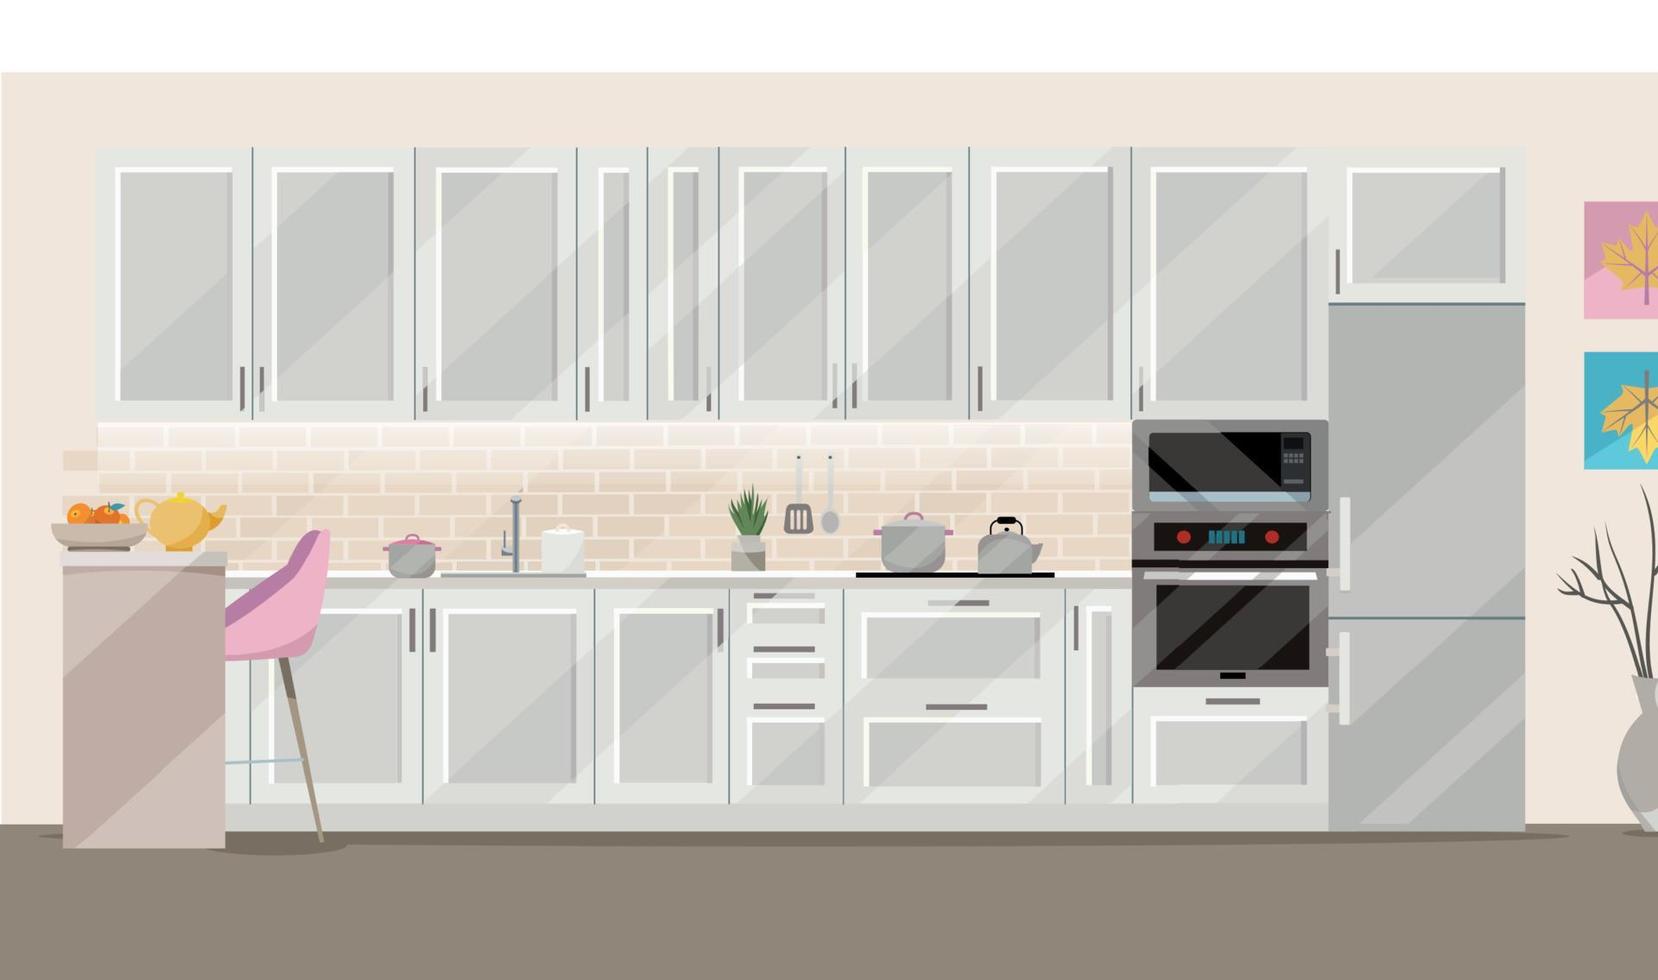 platt illustration vit kök på beige bakgrund med kök Tillbehör - kylskåp, ugn, mikrovågsugn. dining tabell med 4 stolar förbi fönster med transparent gardiner, te, tekanna. vektor